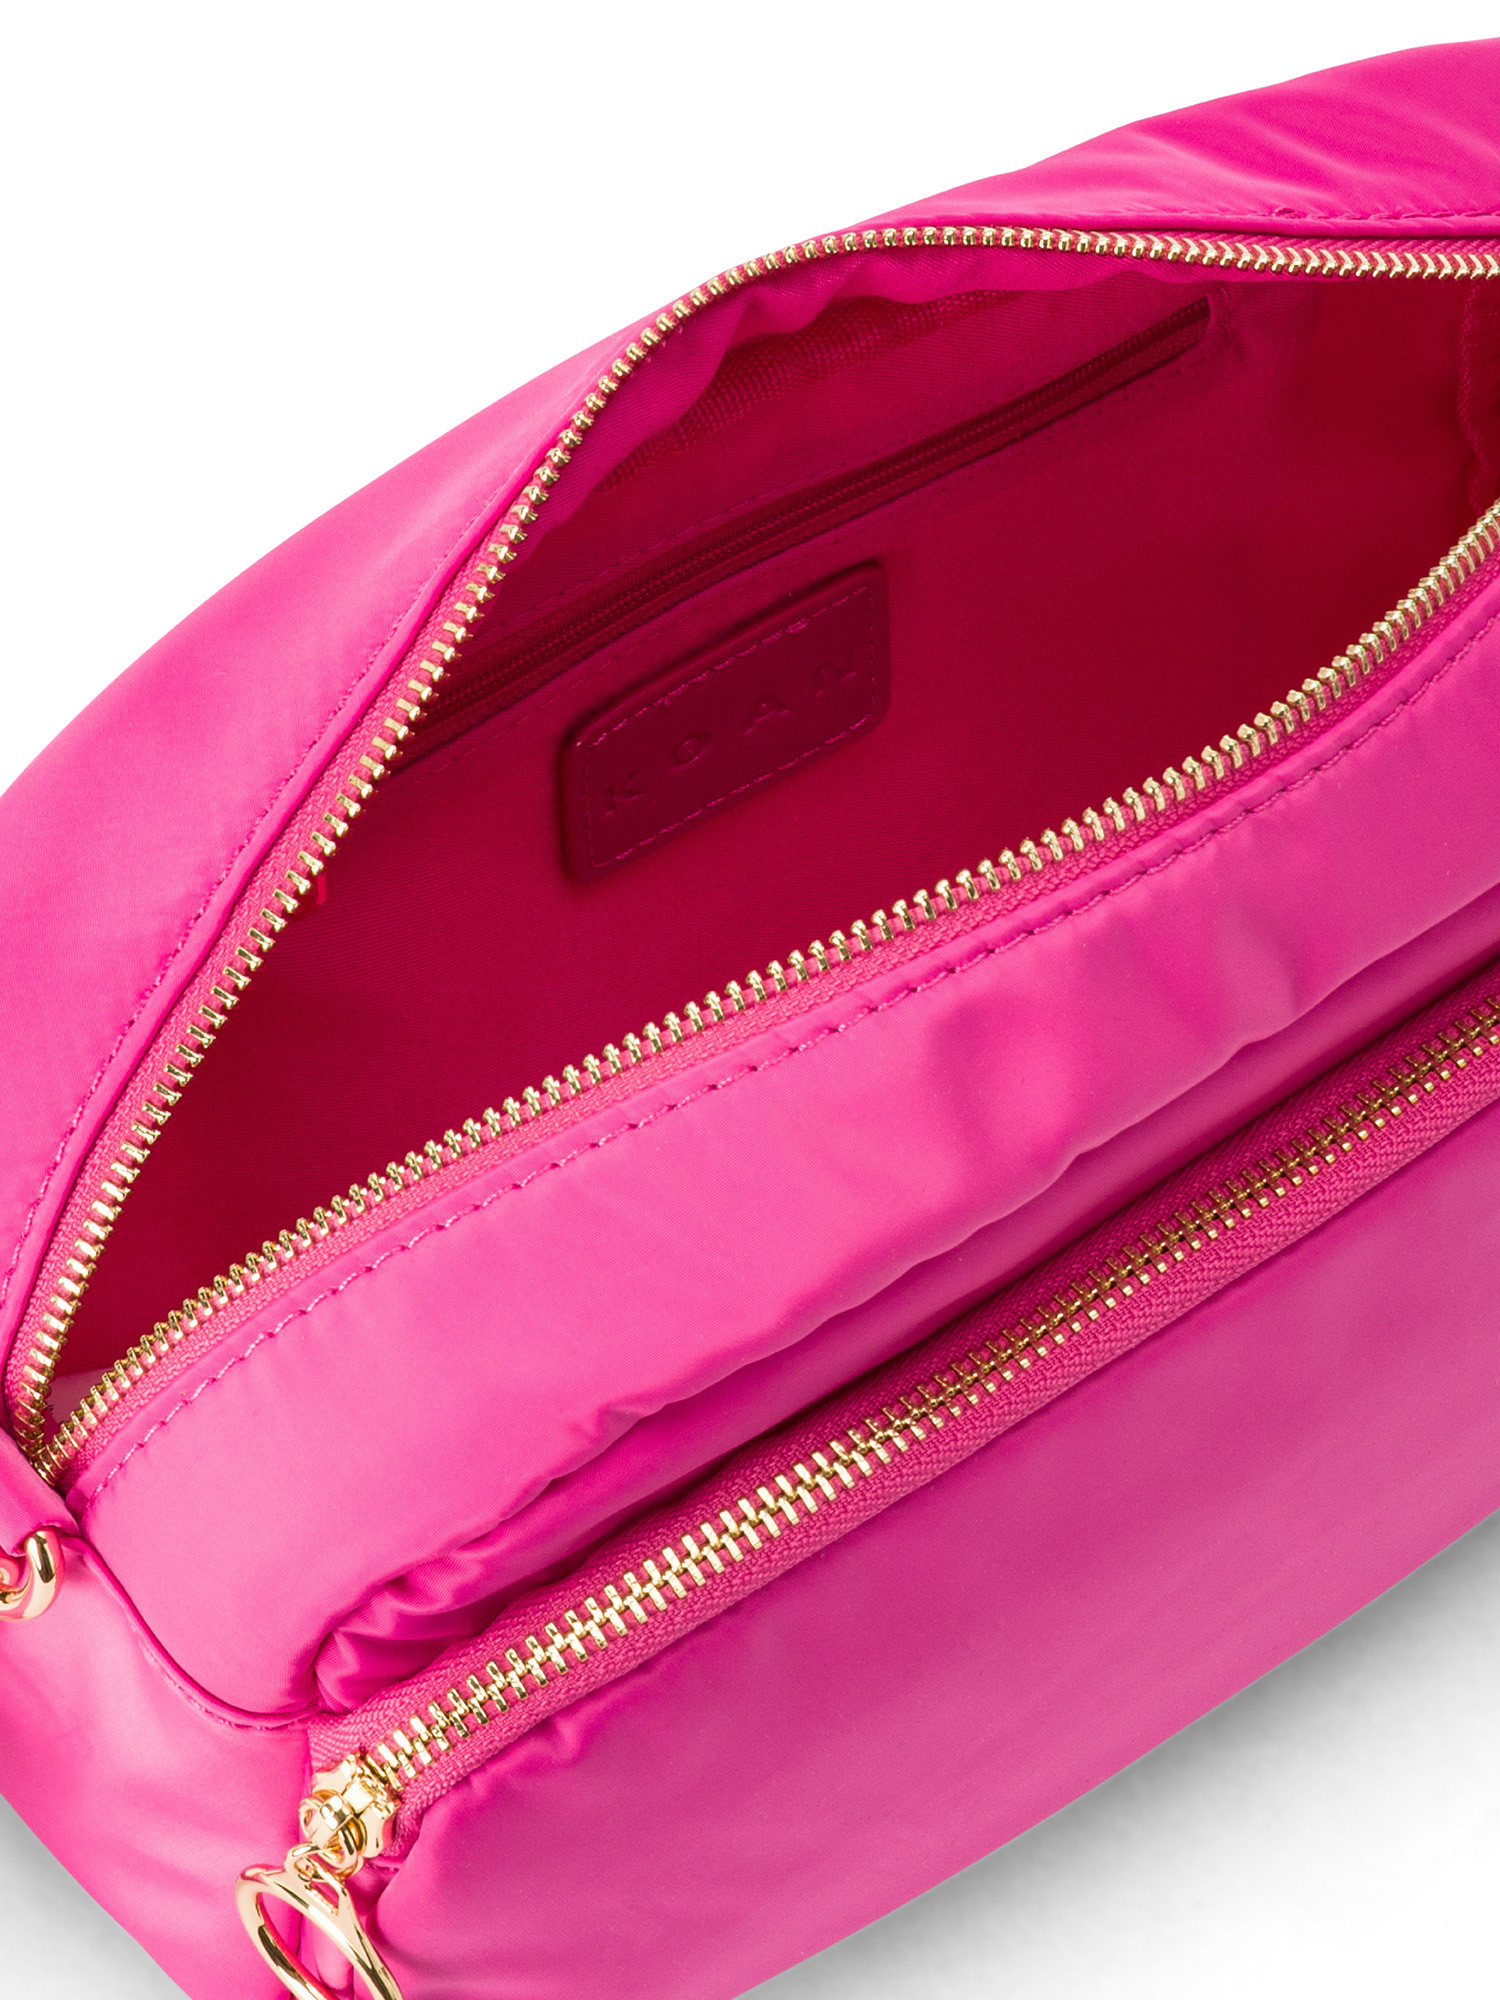 Koan - Shoulder bag, Dark Pink, large image number 2